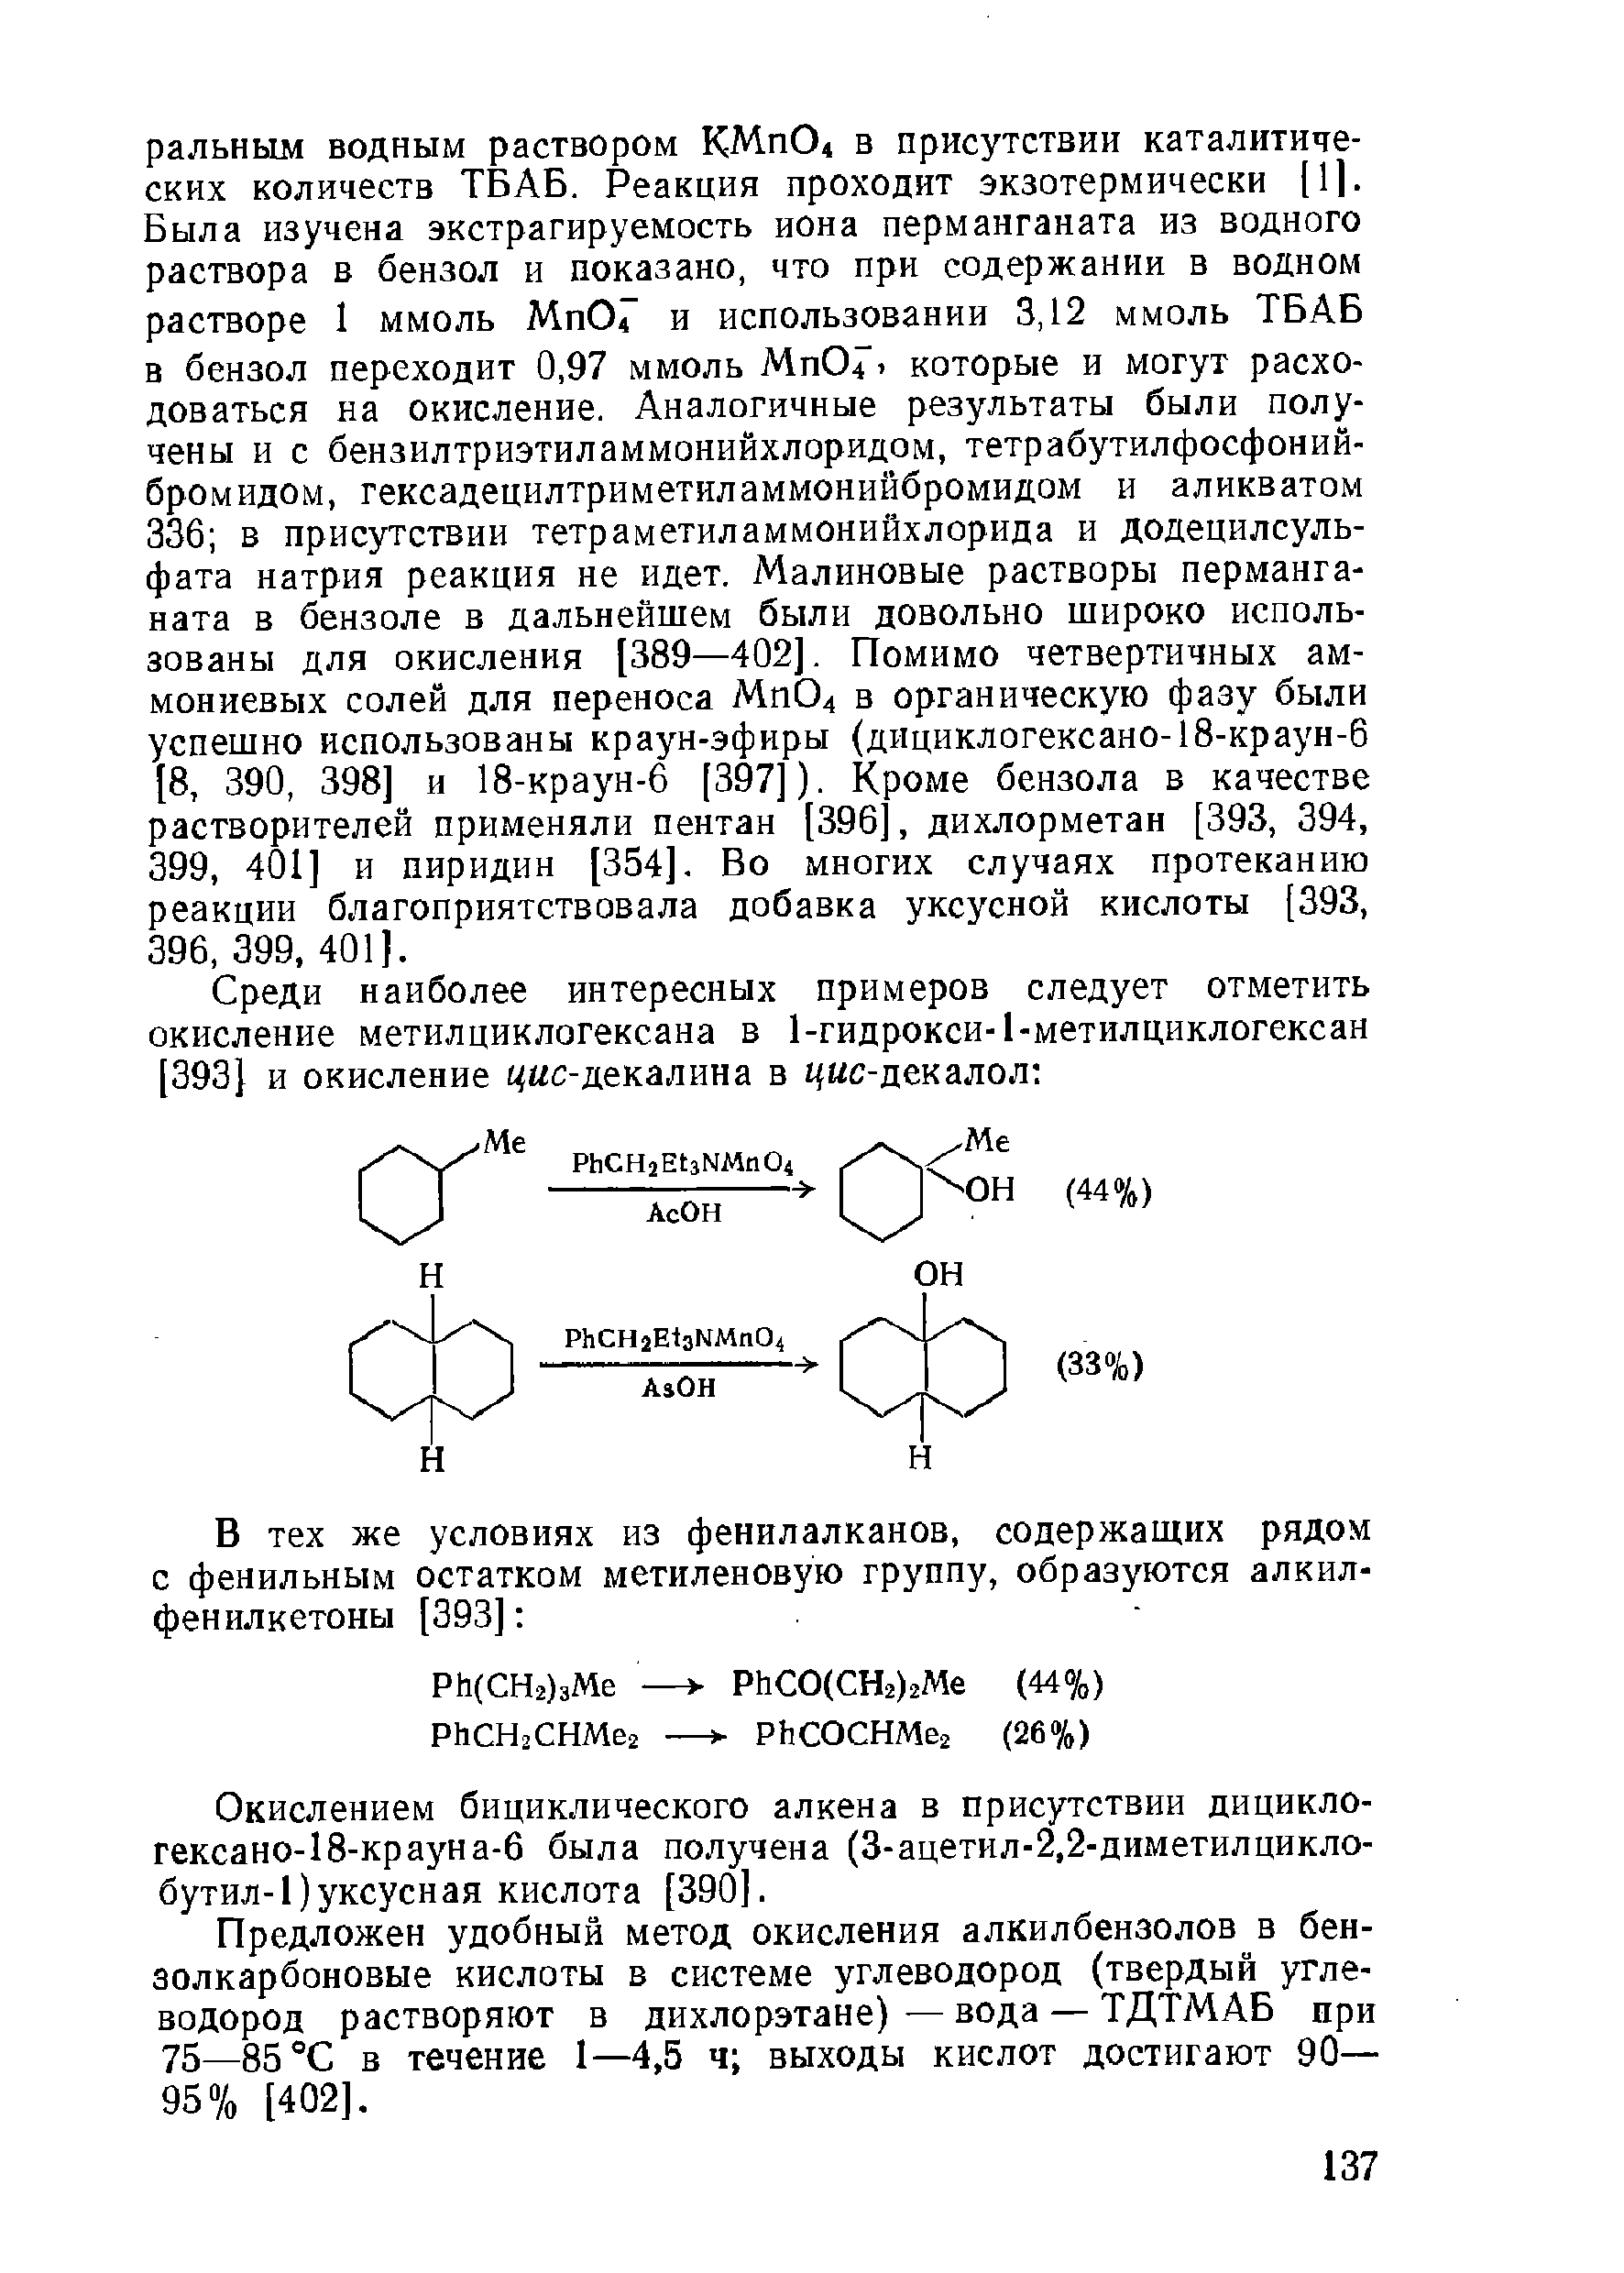 Окислением бициклического алкена в присутствии дицикло-гексано-18-крауна-б была получена (3-ацетил-2,2-диметилцикло-бутил-1)уксусная кислота [390].